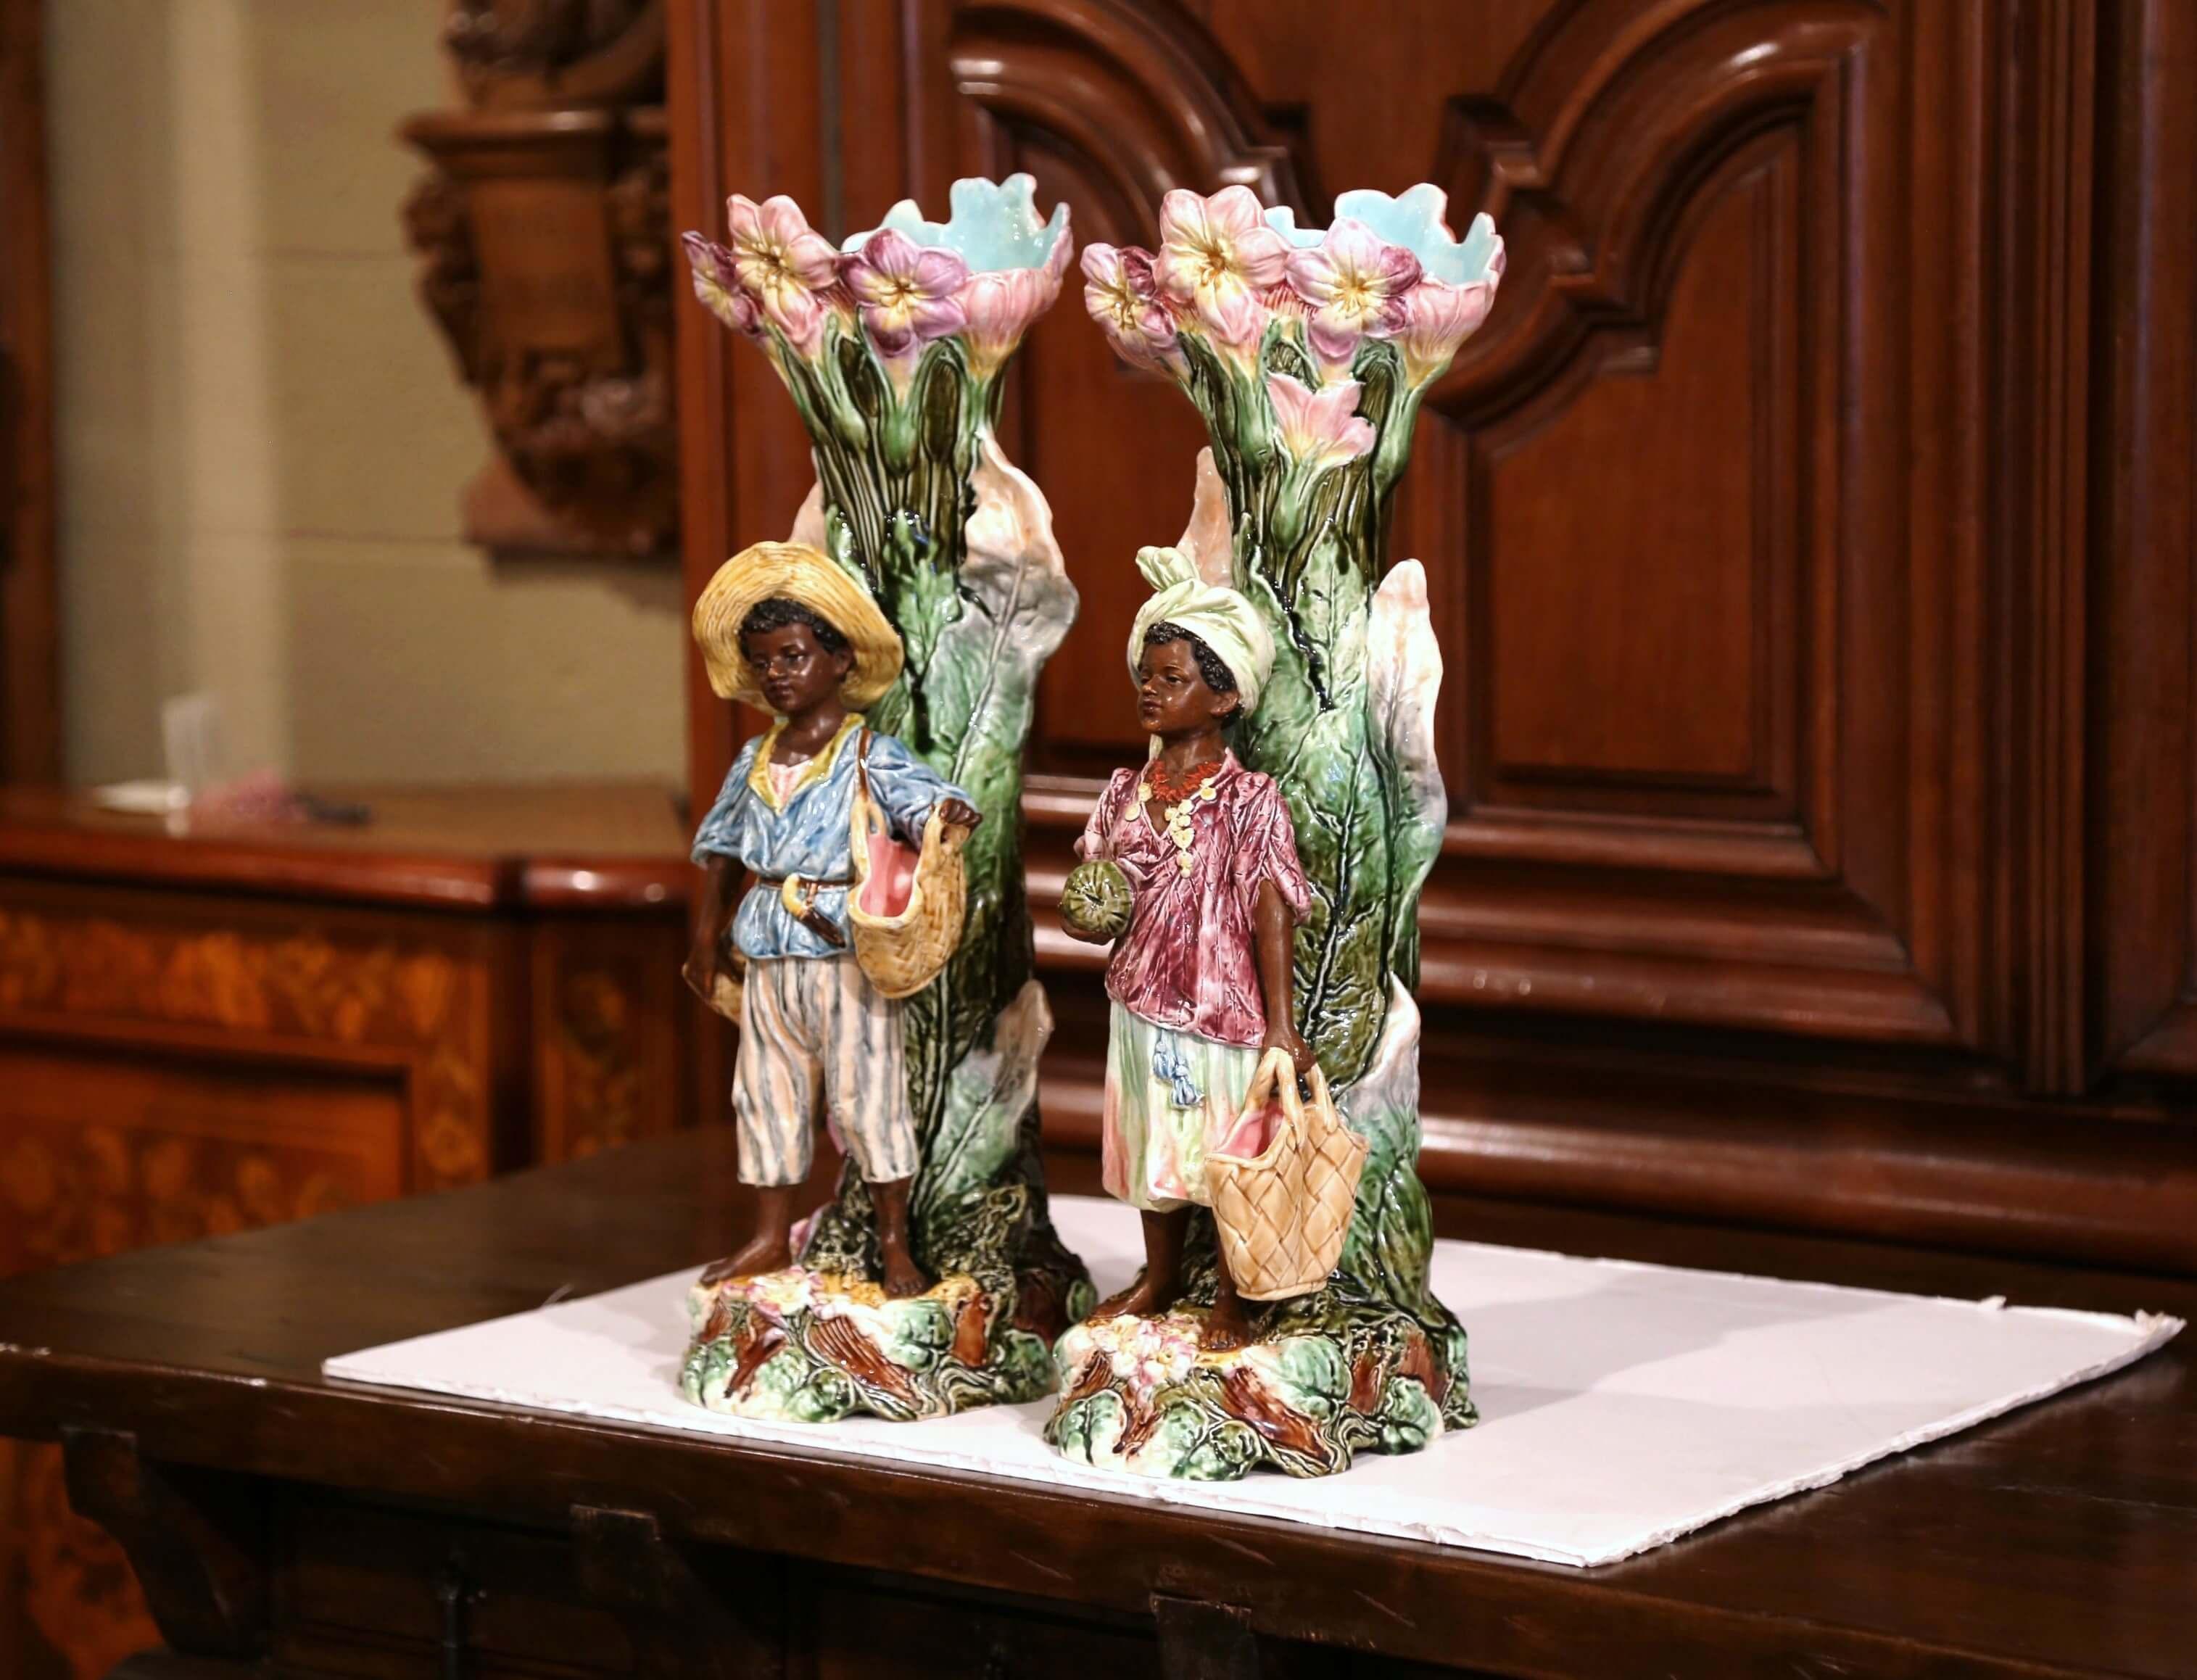 Cette magnifique et unique paire de vases anciens en majolique a été fabriquée en France, vers 1880. Les jardinières hautes et fines en céramique colorée représentent deux enfants peints à la main en haut-relief revenant du marché, agrémentés d'un